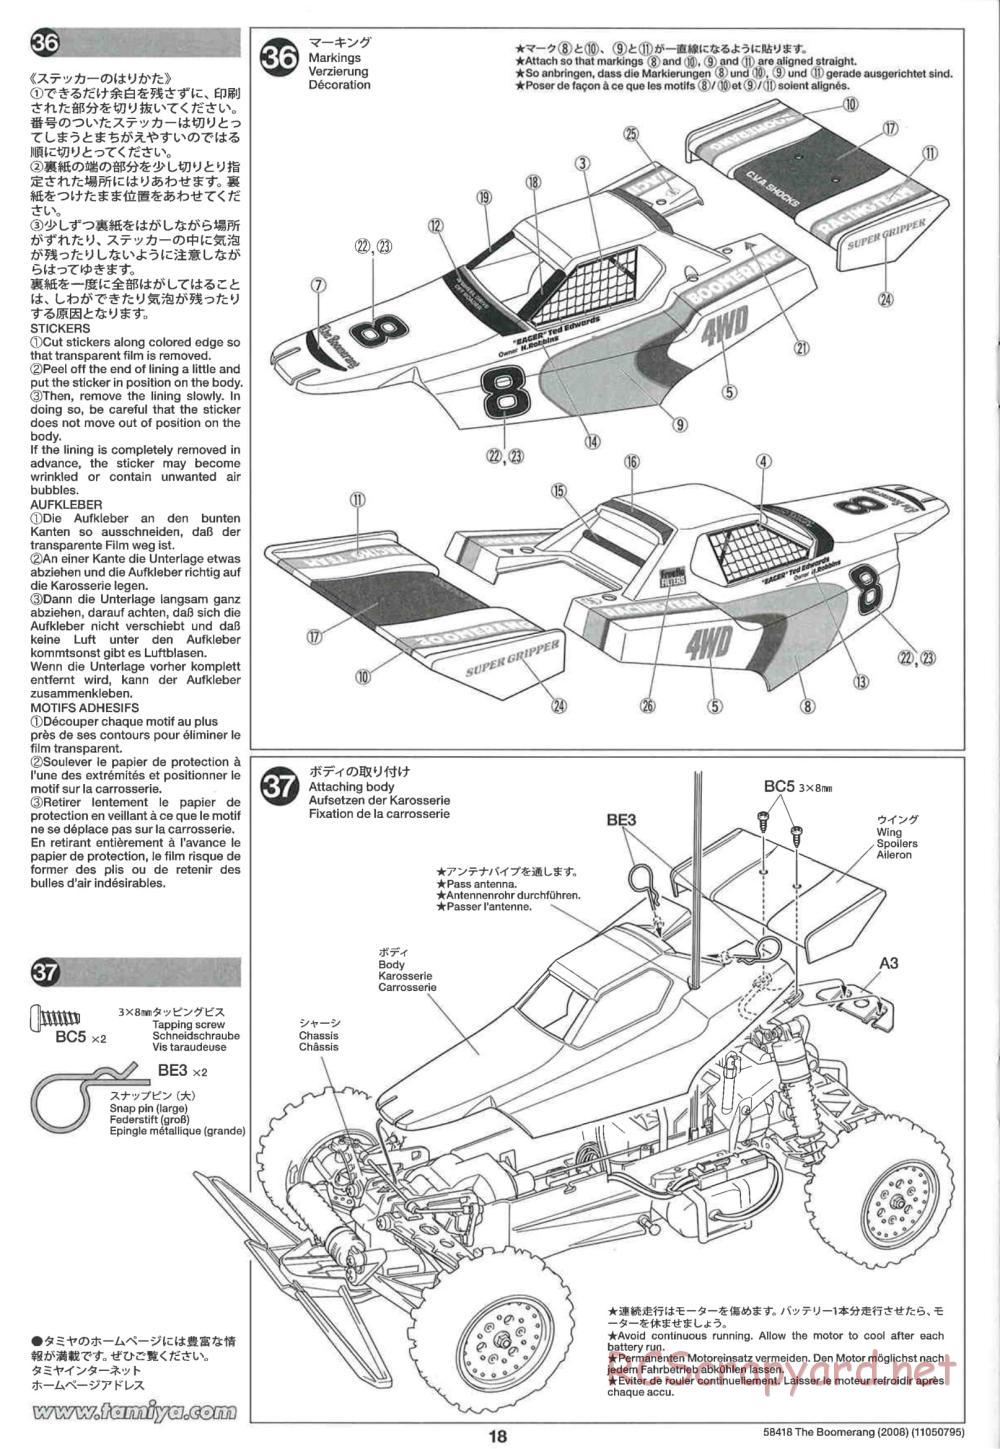 Tamiya - The Boomerang 2008 Chassis - Manual - Page 18